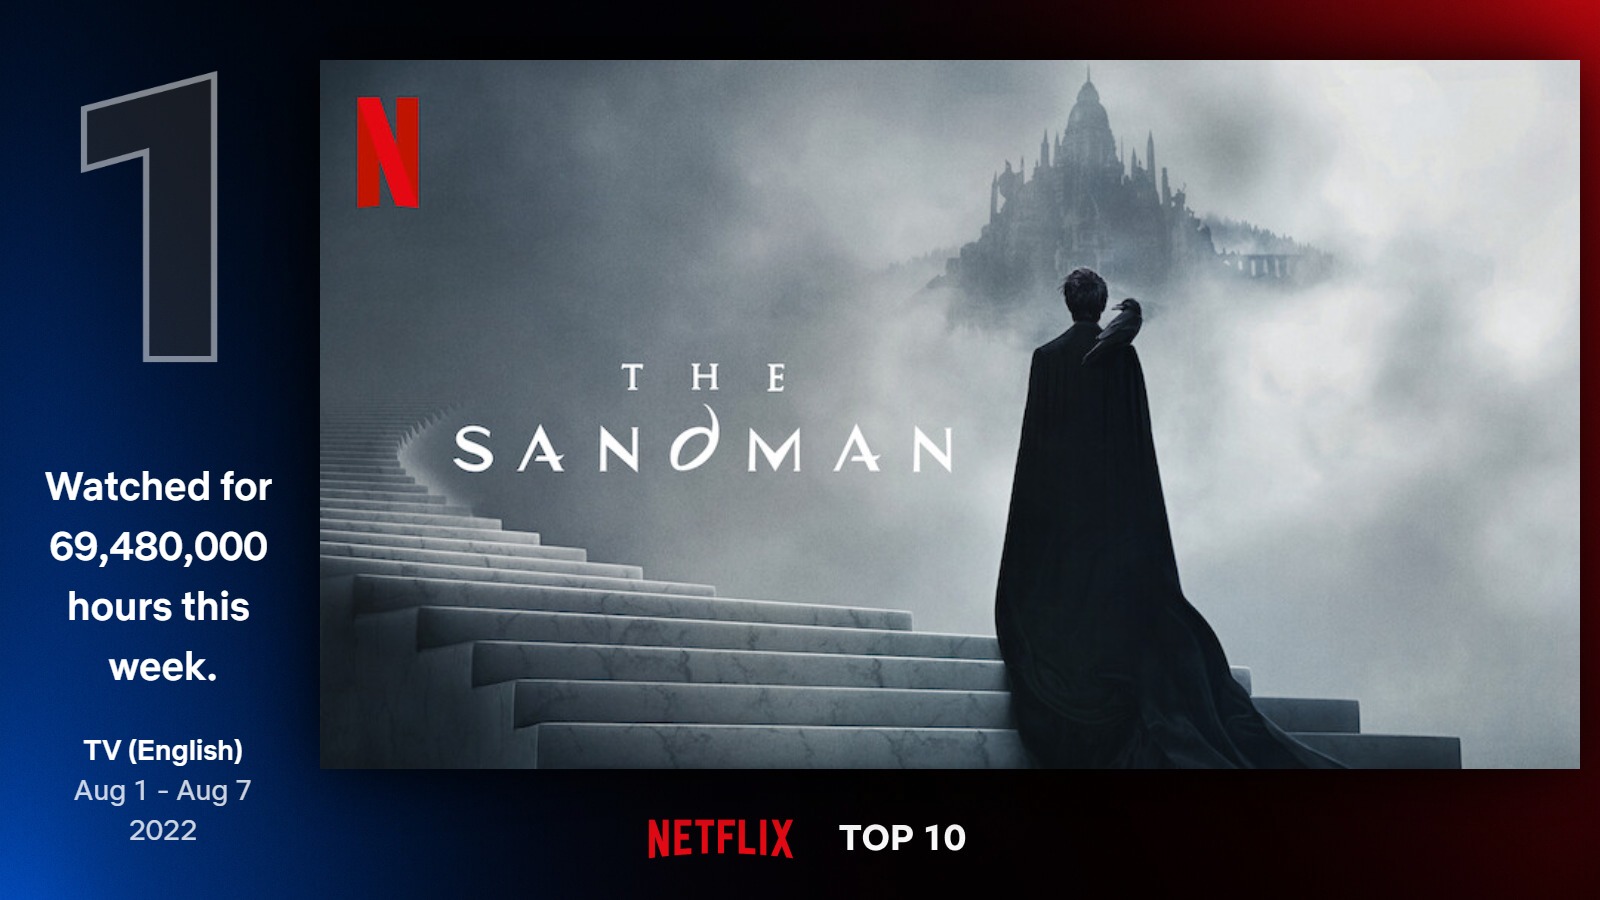 رسم يظهر The Sandman باعتباره العرض الأول على Netflix في الأسبوع الأول من أغسطس 2022.